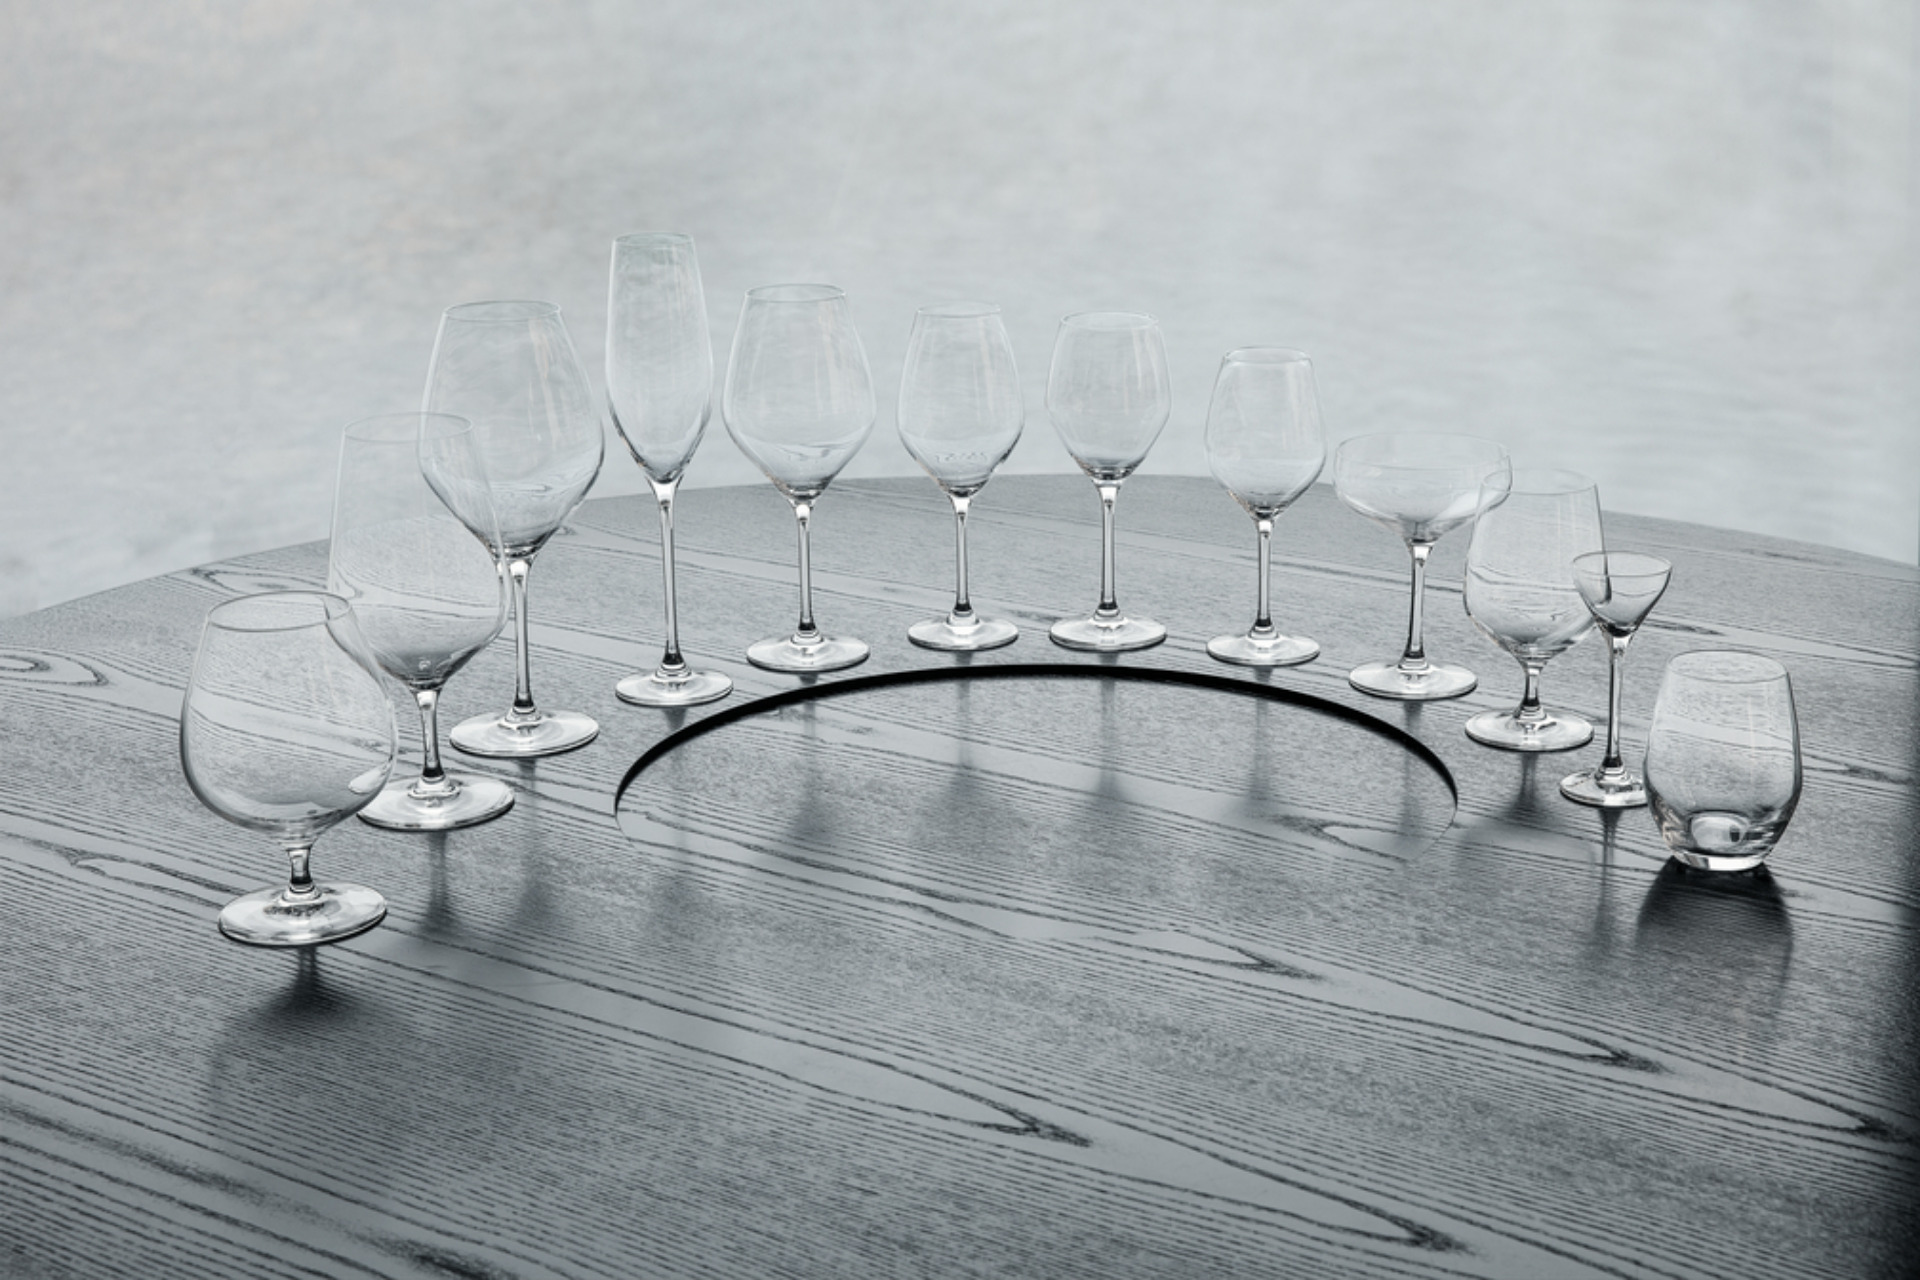 Glaslinie aus der Serie Cabernet, Holmegaard, entworfen von Peter Svarrer